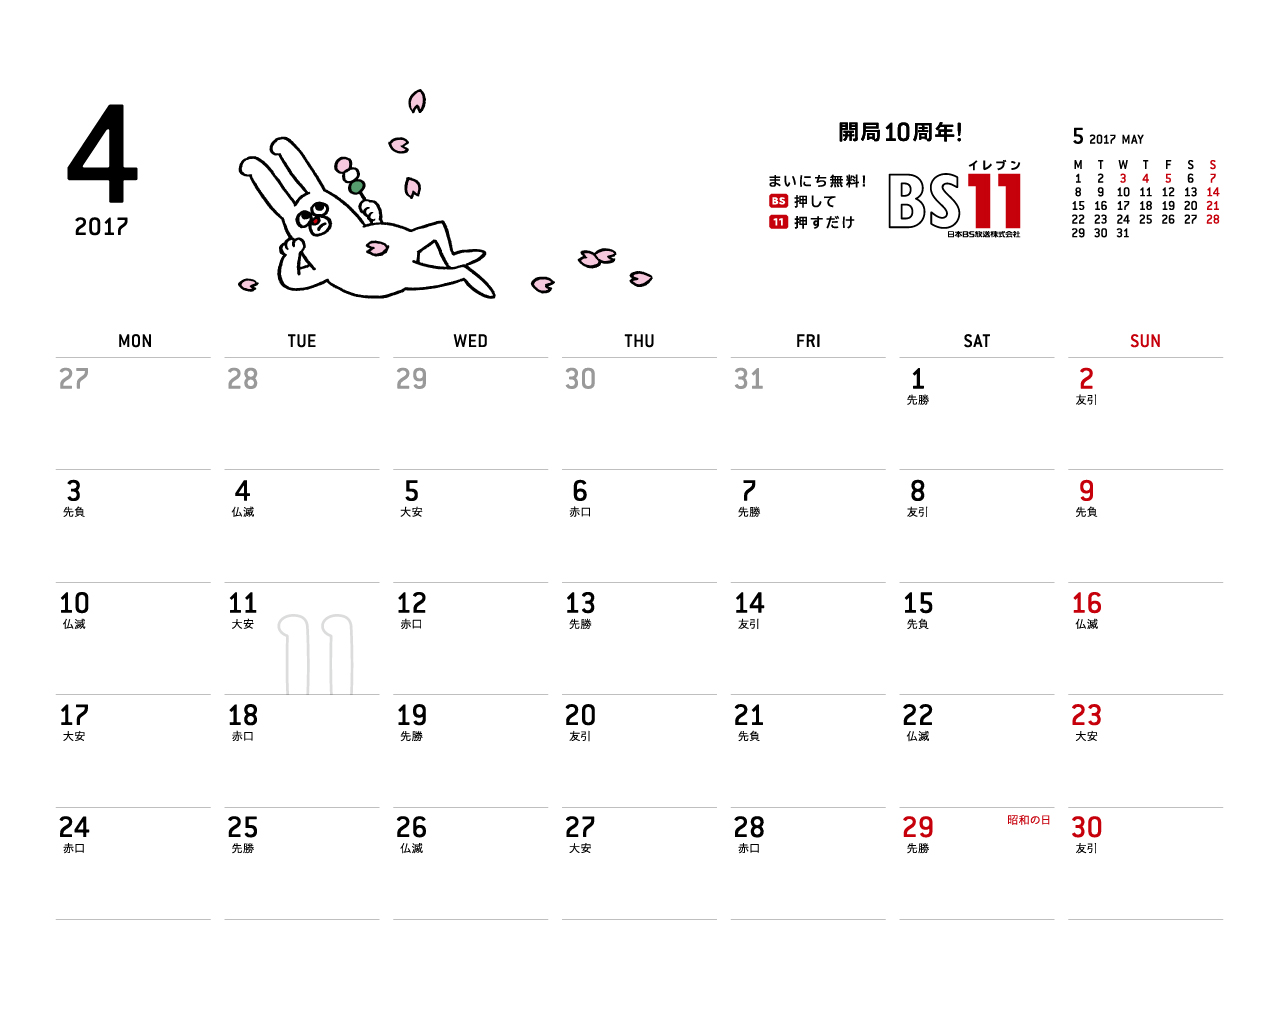 じゅういっちゃんのデジタルカレンダー17年04月 Bs11 イレブン いつでも無料放送